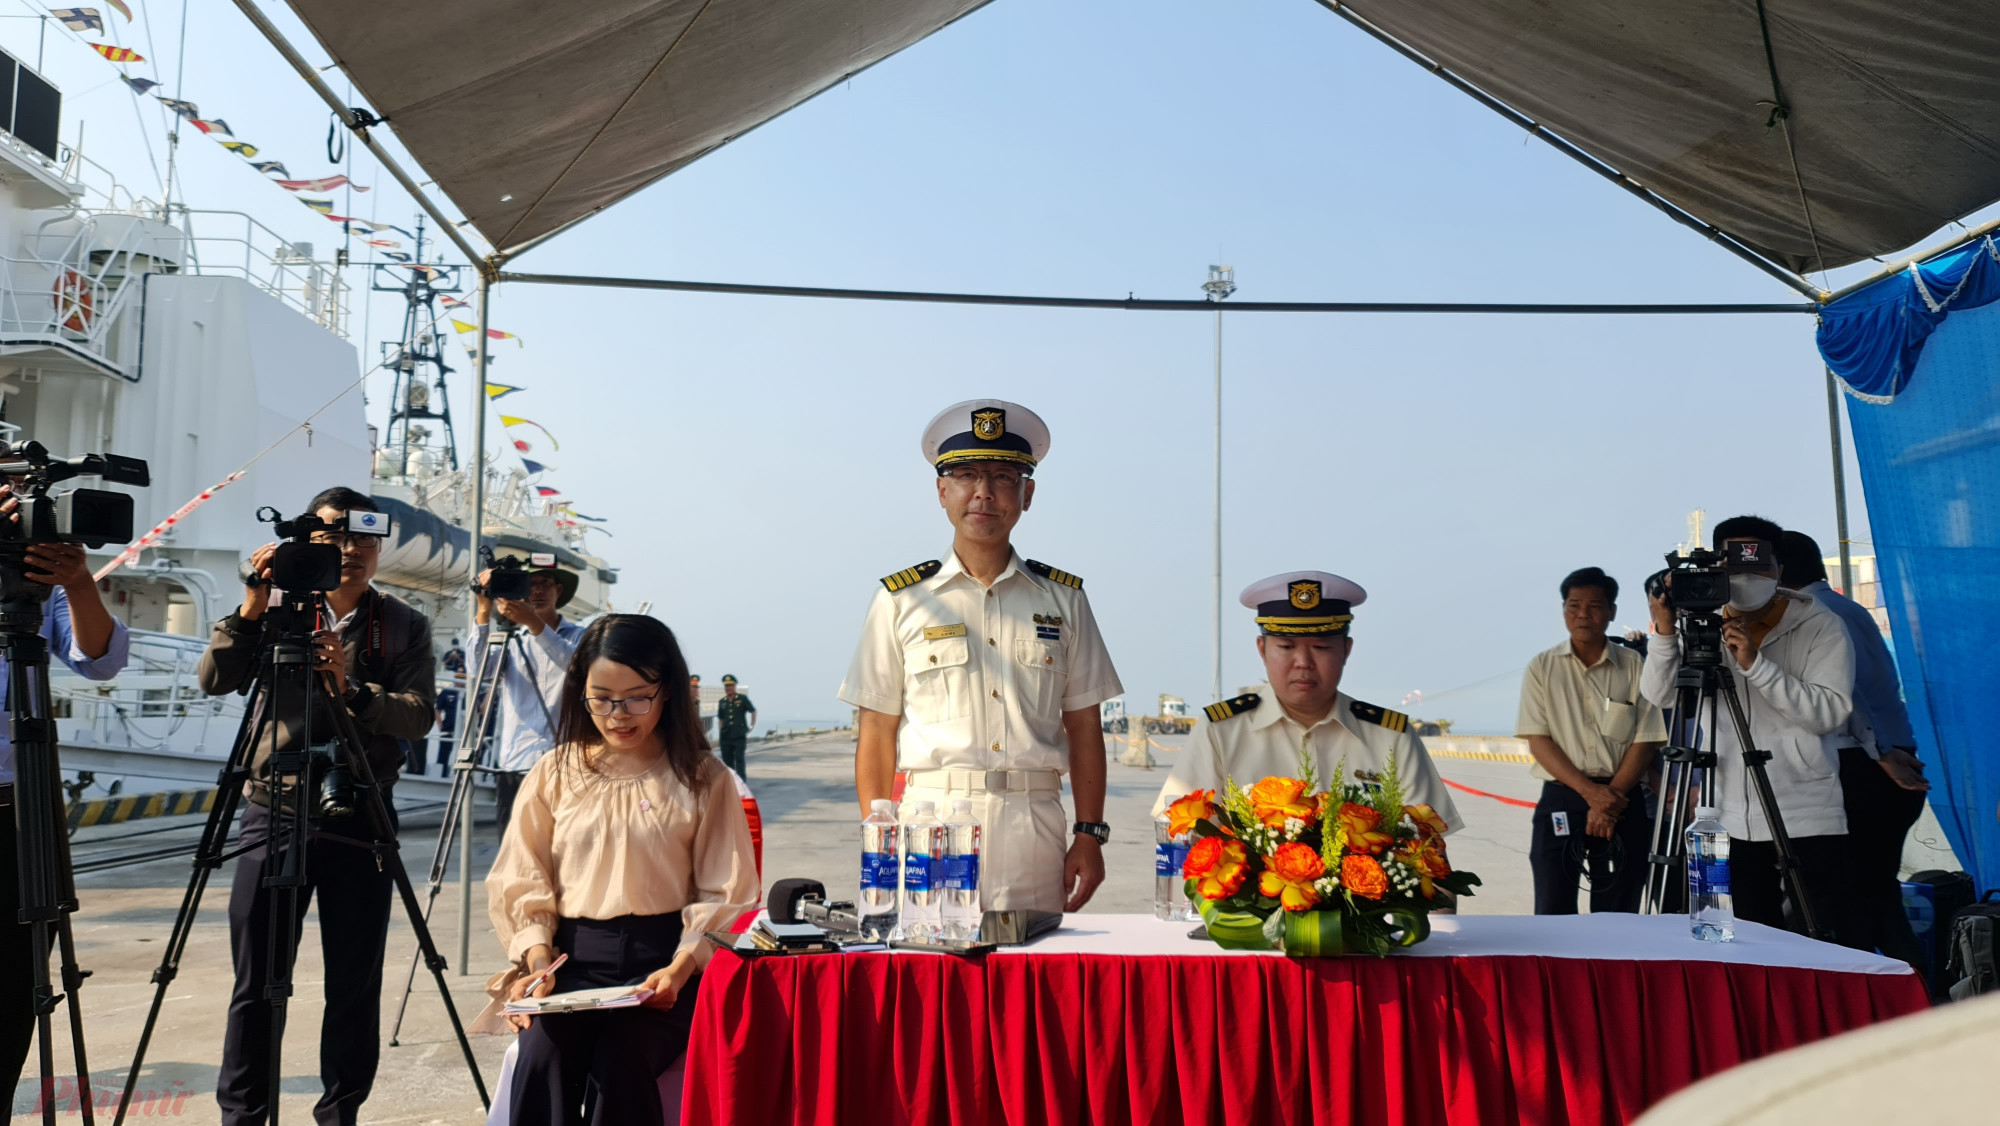 Chuyến thăm Đà Nẵng của SETTSU nhân dịp kỷ niệm 50 năm thiết lập quan hệ ngoại giao giữa Việt Nam và Nhật Bản (1973 – 2023). Tàu sẽ thăm xã giao thành phố Đà Nẵng từ ngày 13/2 đến 18/2 và giao lưu, huấn luyện chung với Bộ Tư lệnh Vùng Cảnh sát biển 2.